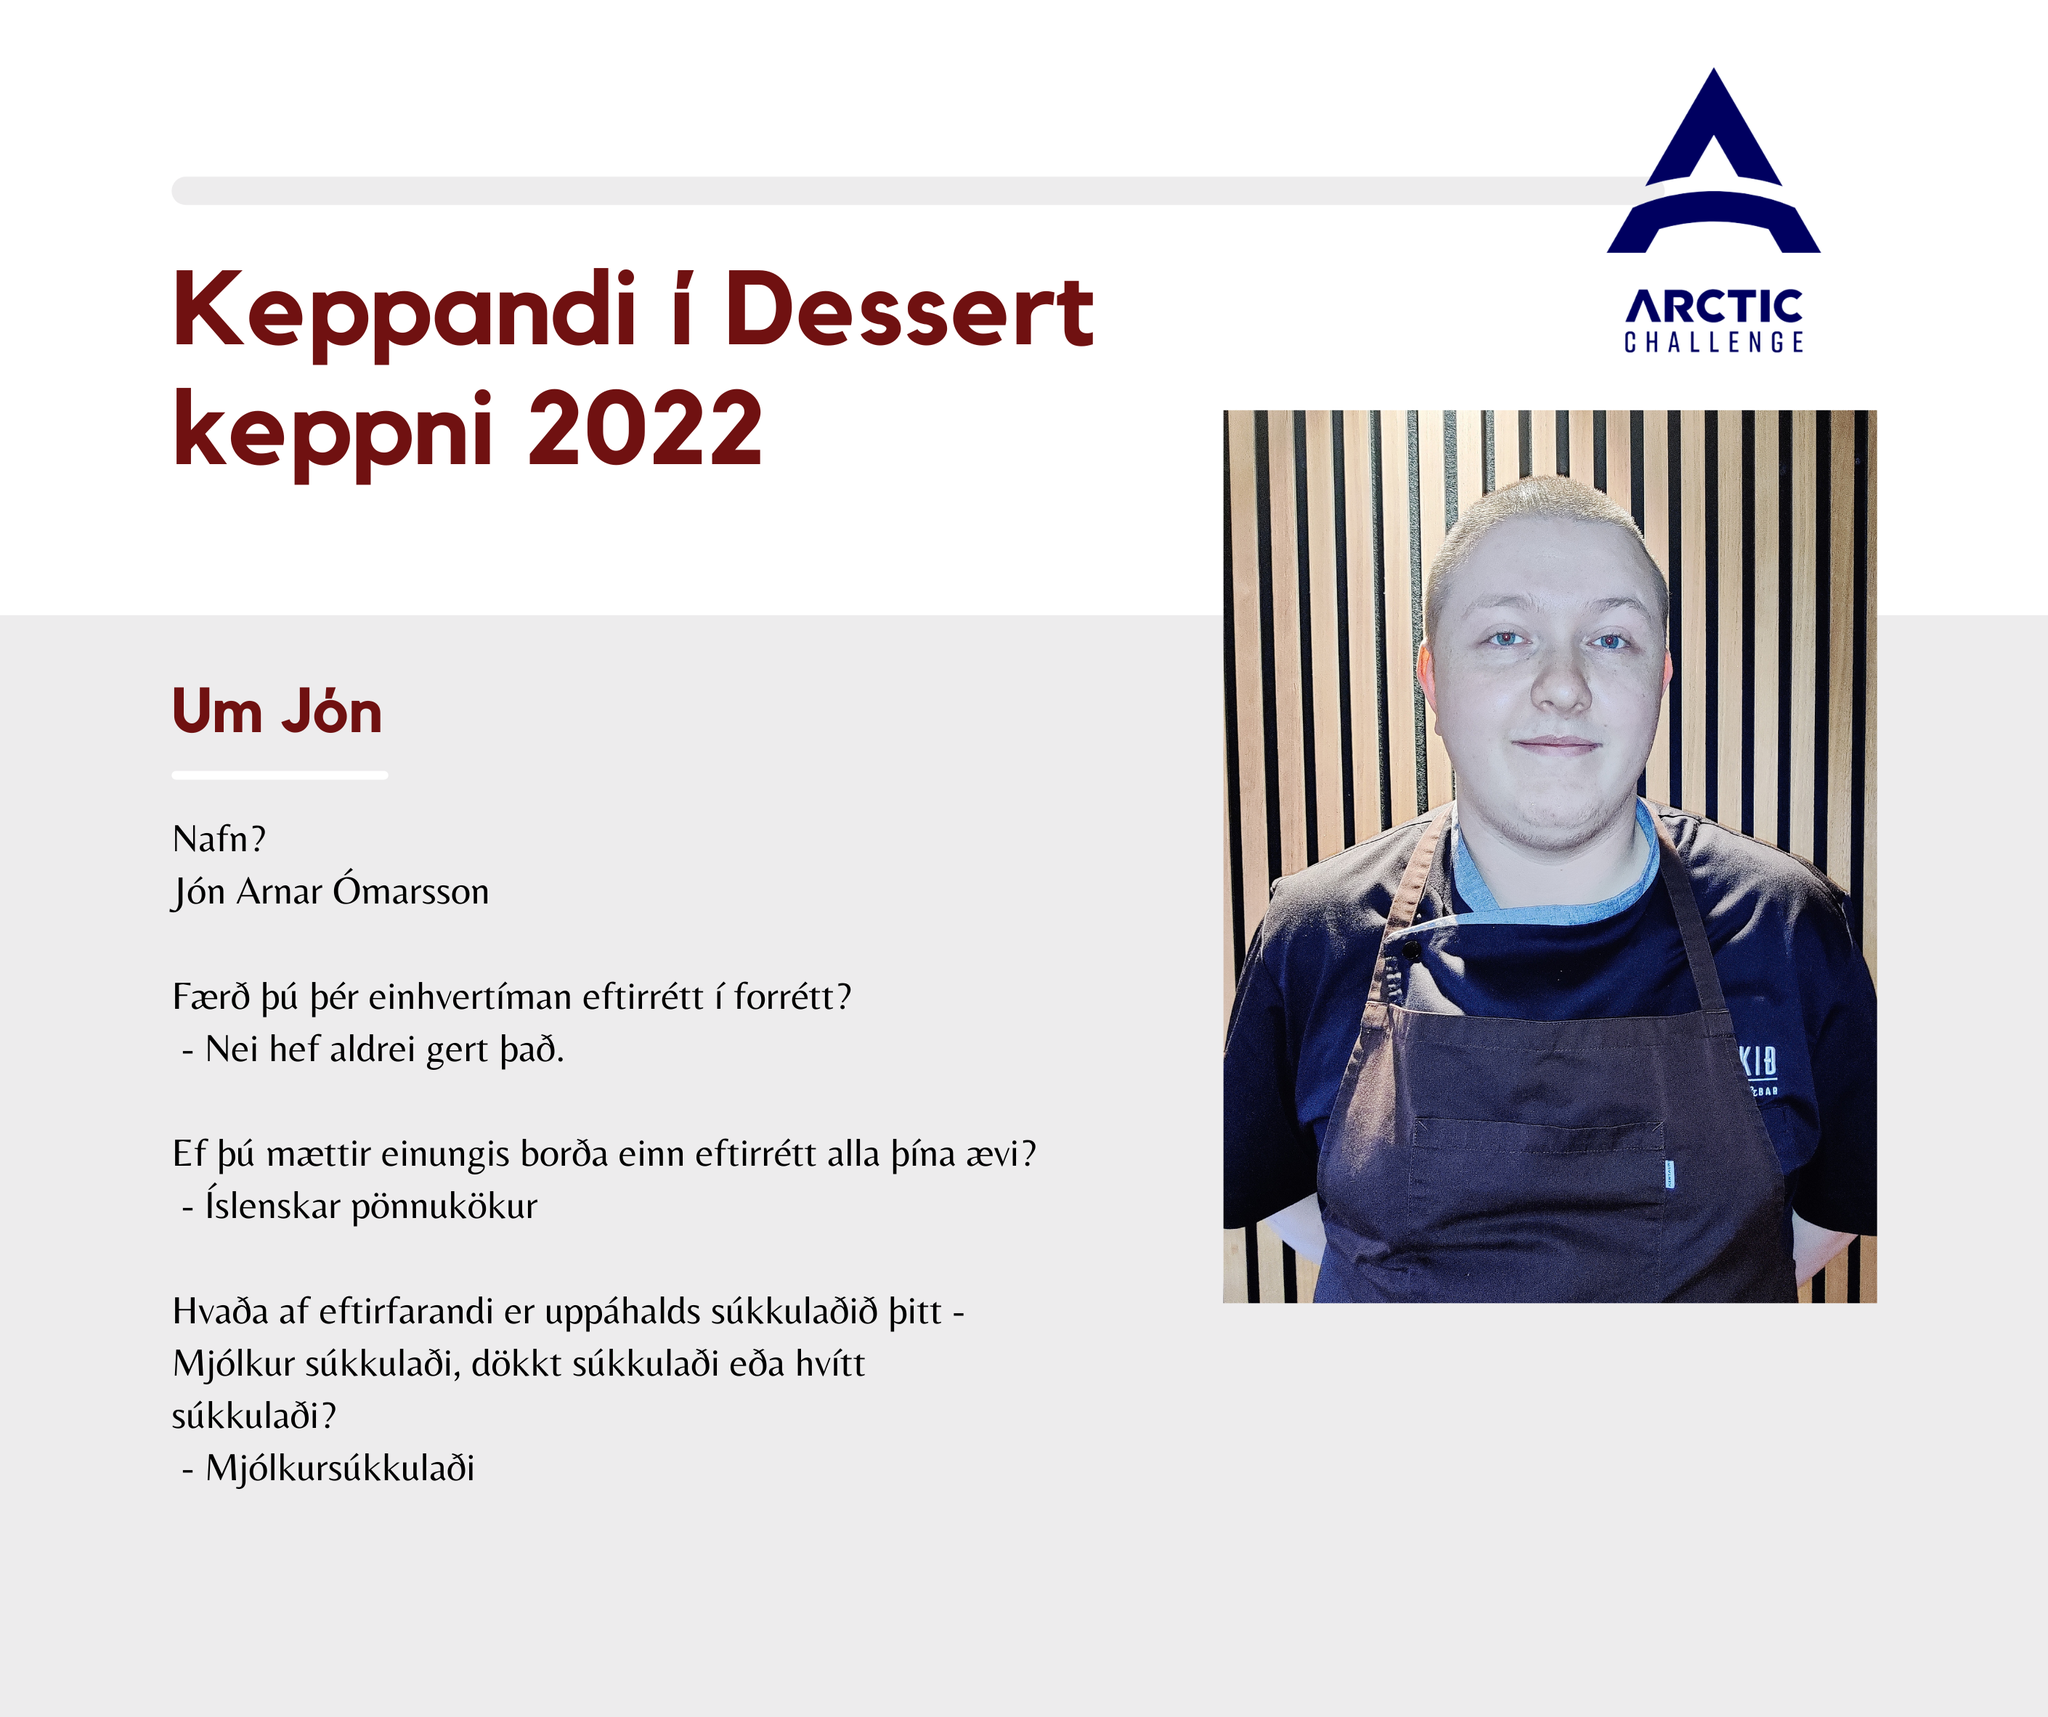 Kynning á keppendum í dessert keppni Arctic Challenge – Jón Arnar Ómarsson